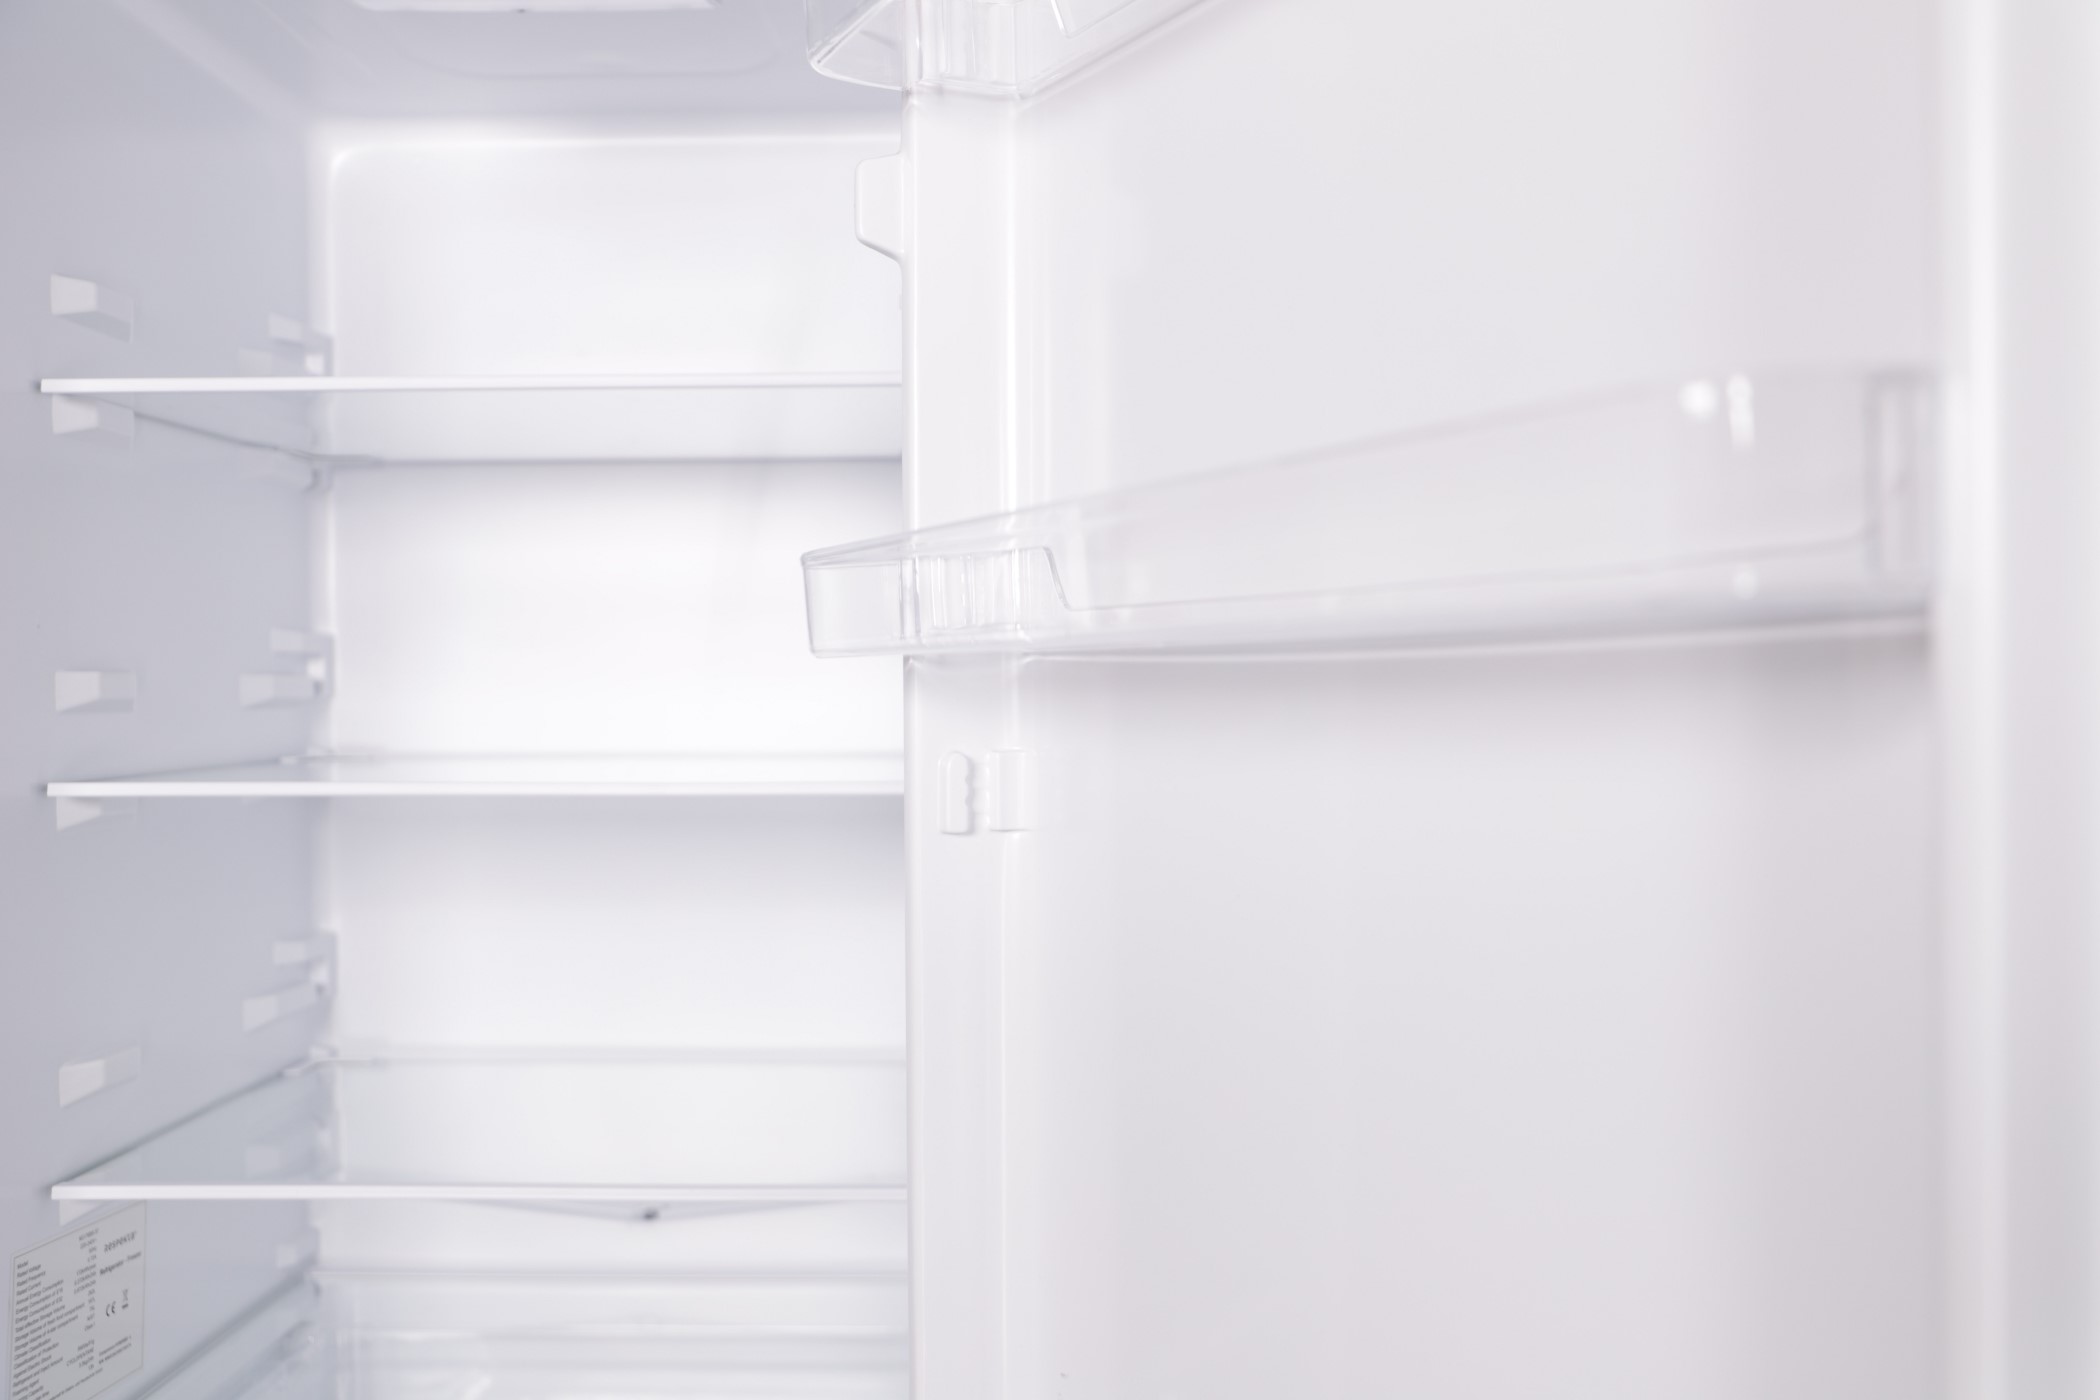 Kühlschrank Kühl Gefrierkombination Standgerät freistehend Schwarz Respekta